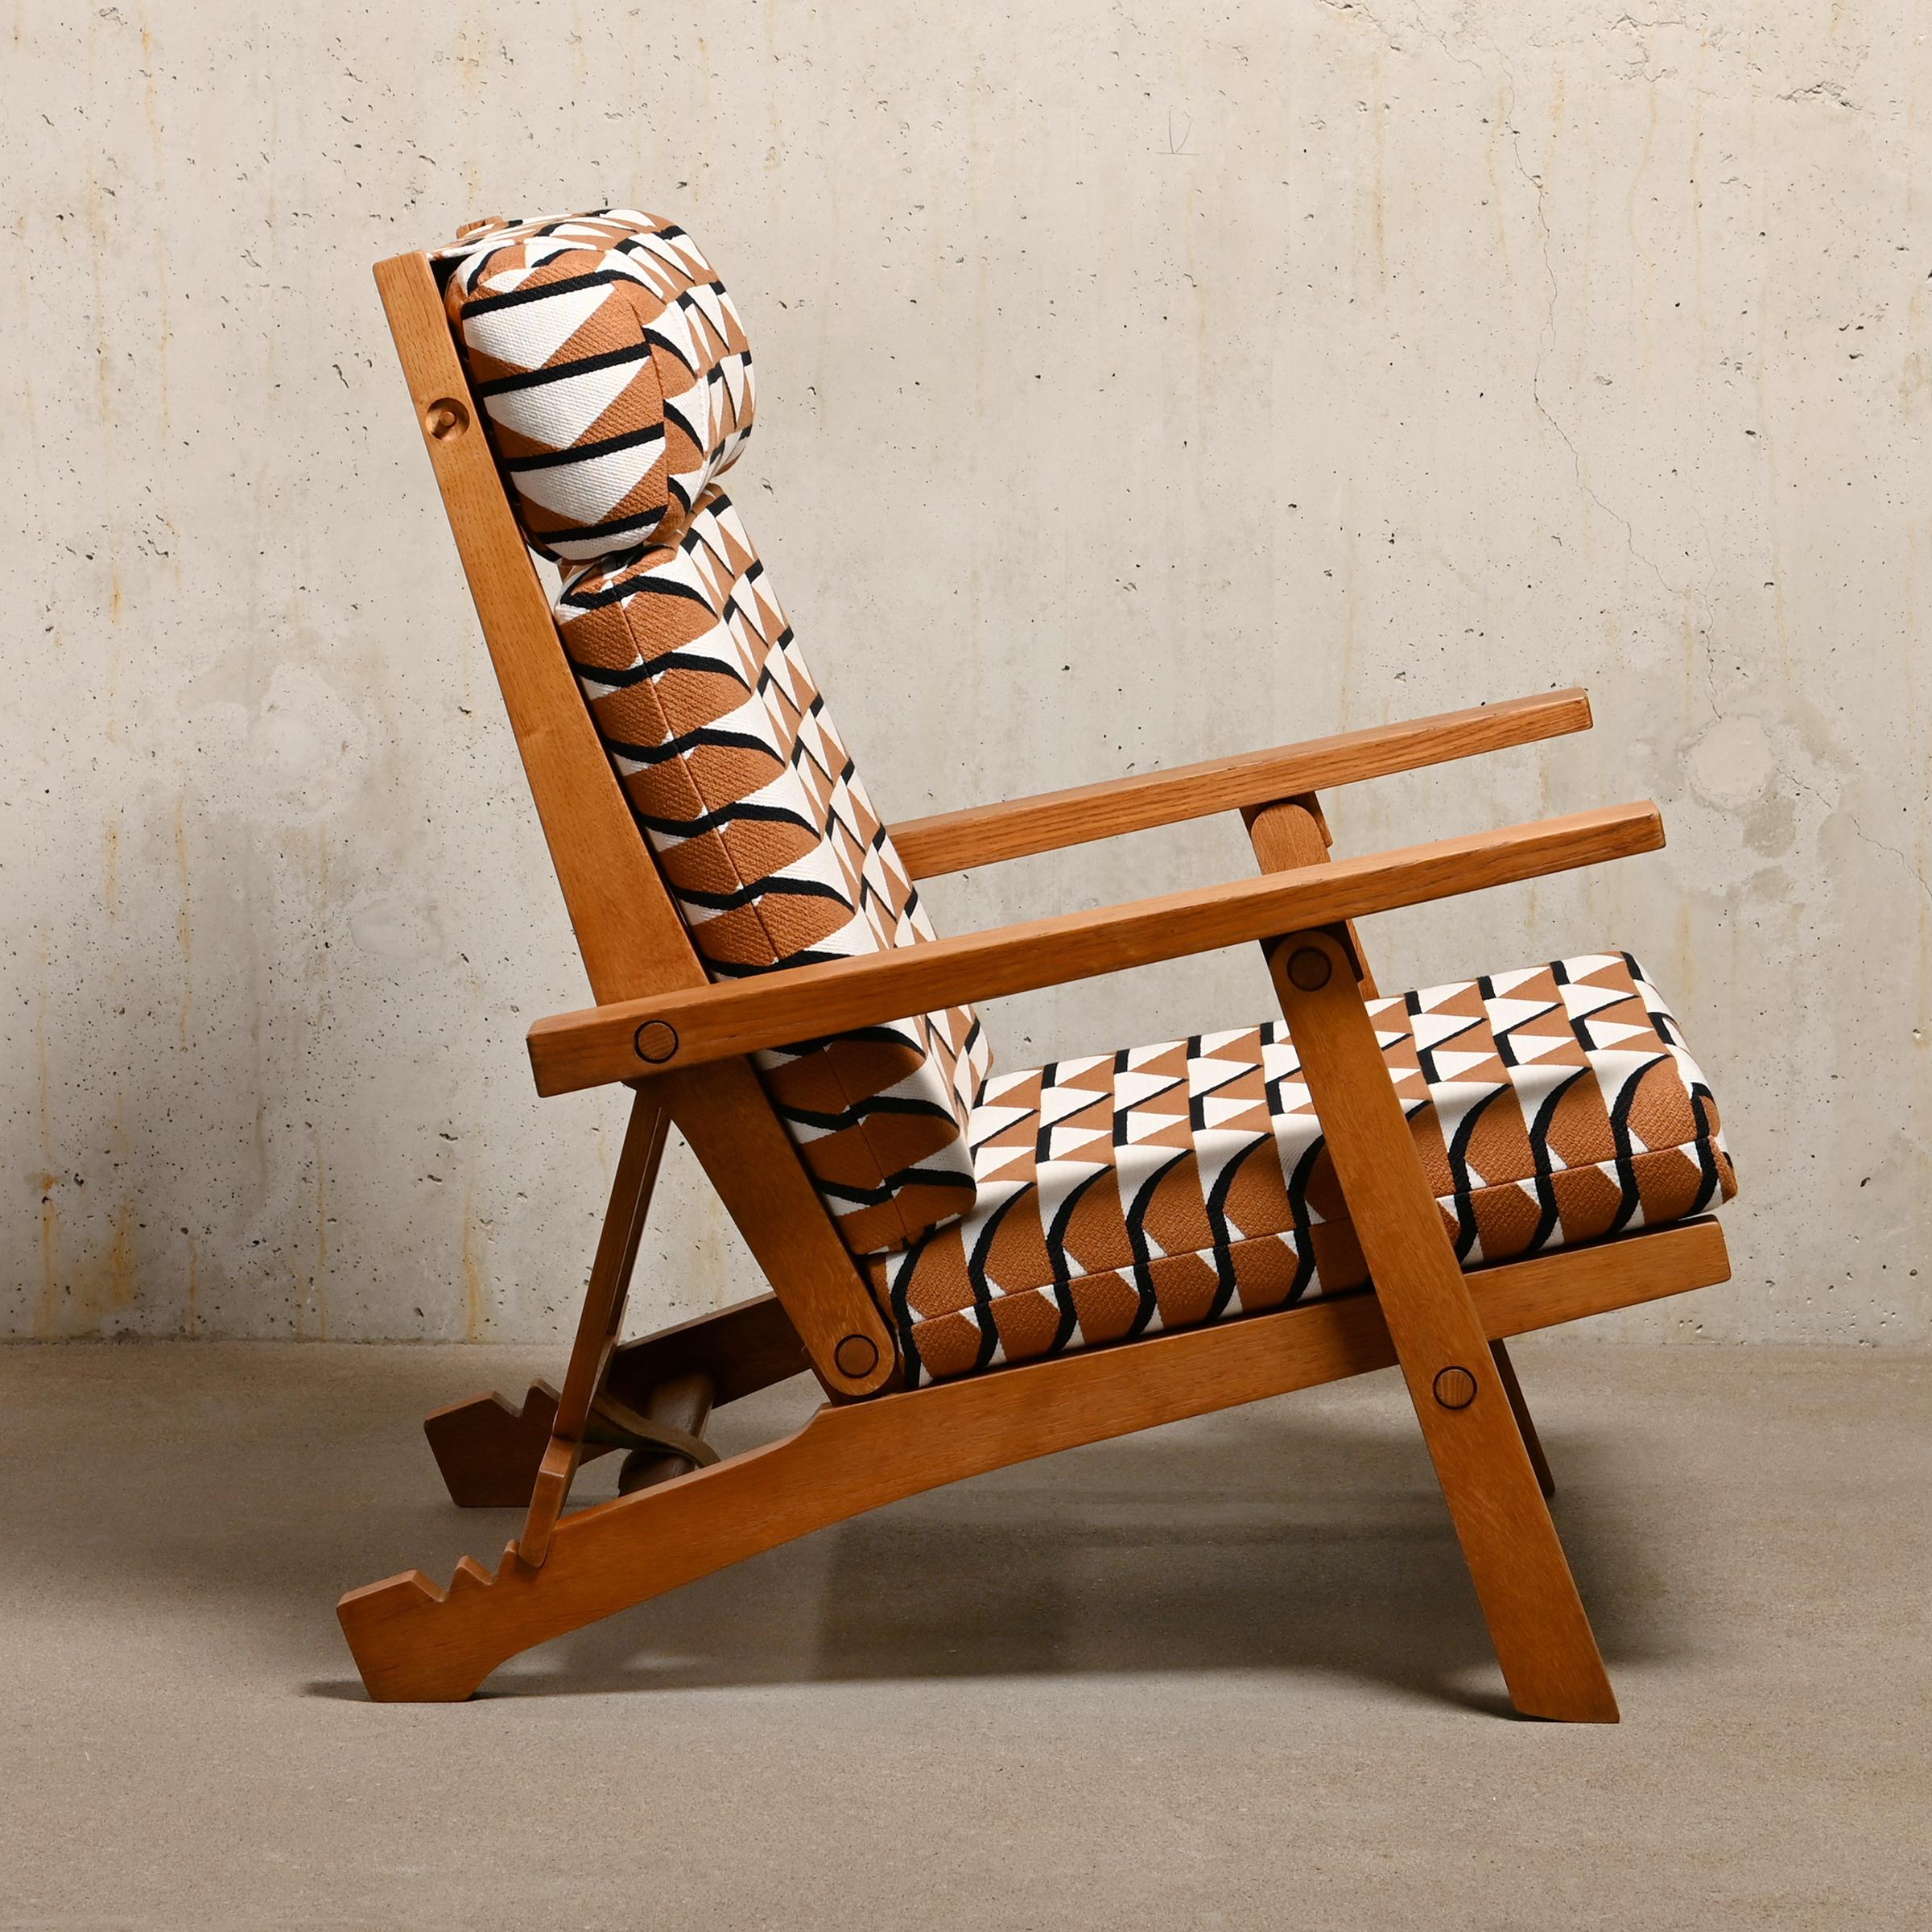 Foam Hans J. Wegner Lounge Chair AP 72 in Oak and Pierre Frey fabric for AP Stolen